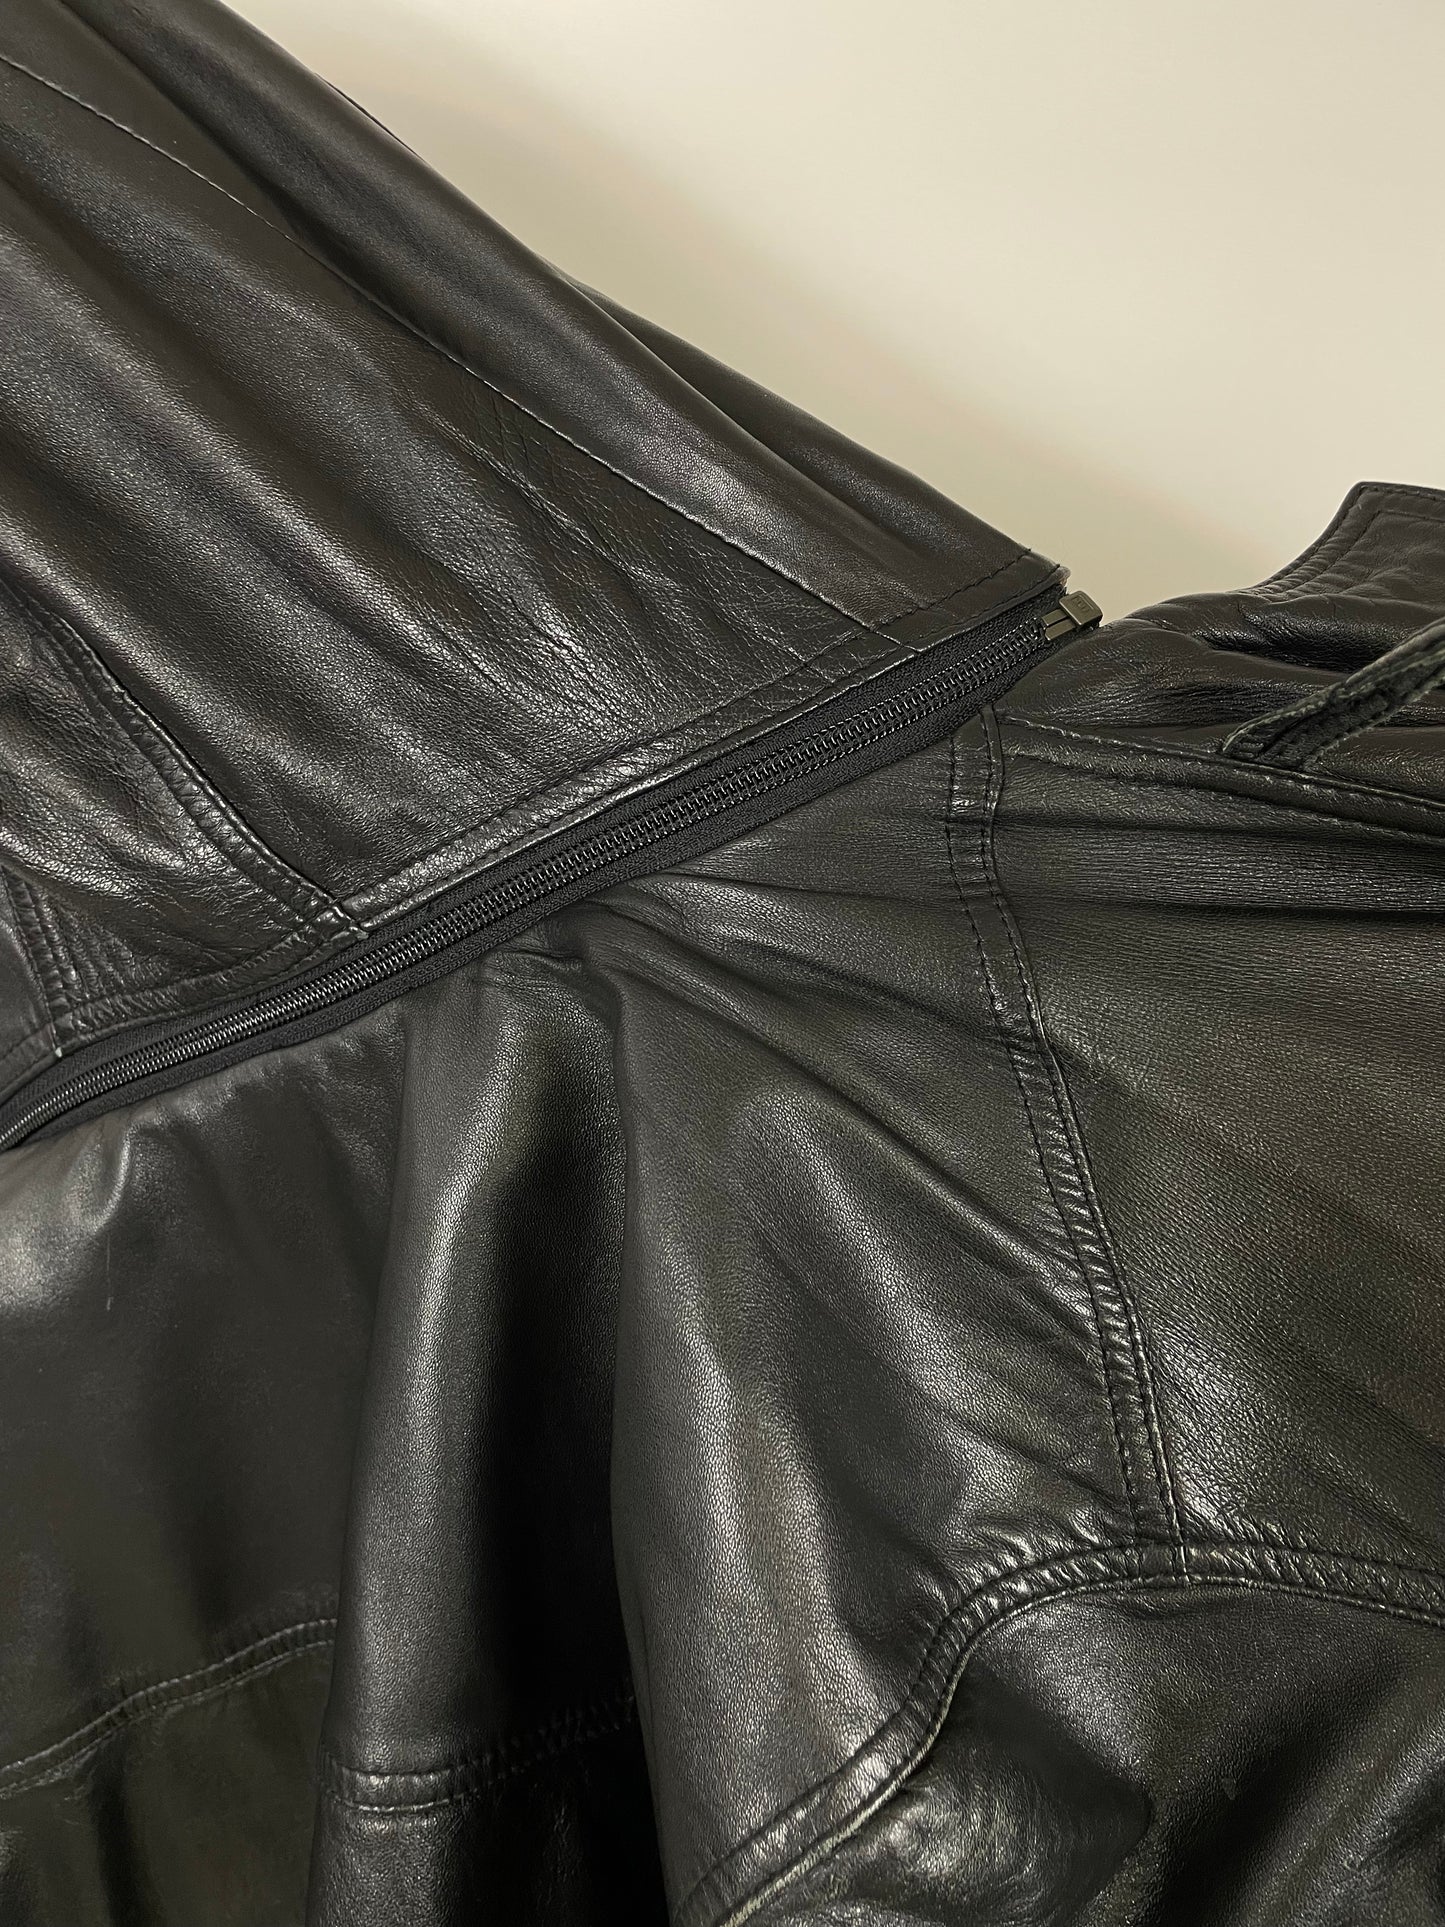 Pierre Cardin Leather Jacket 1980s